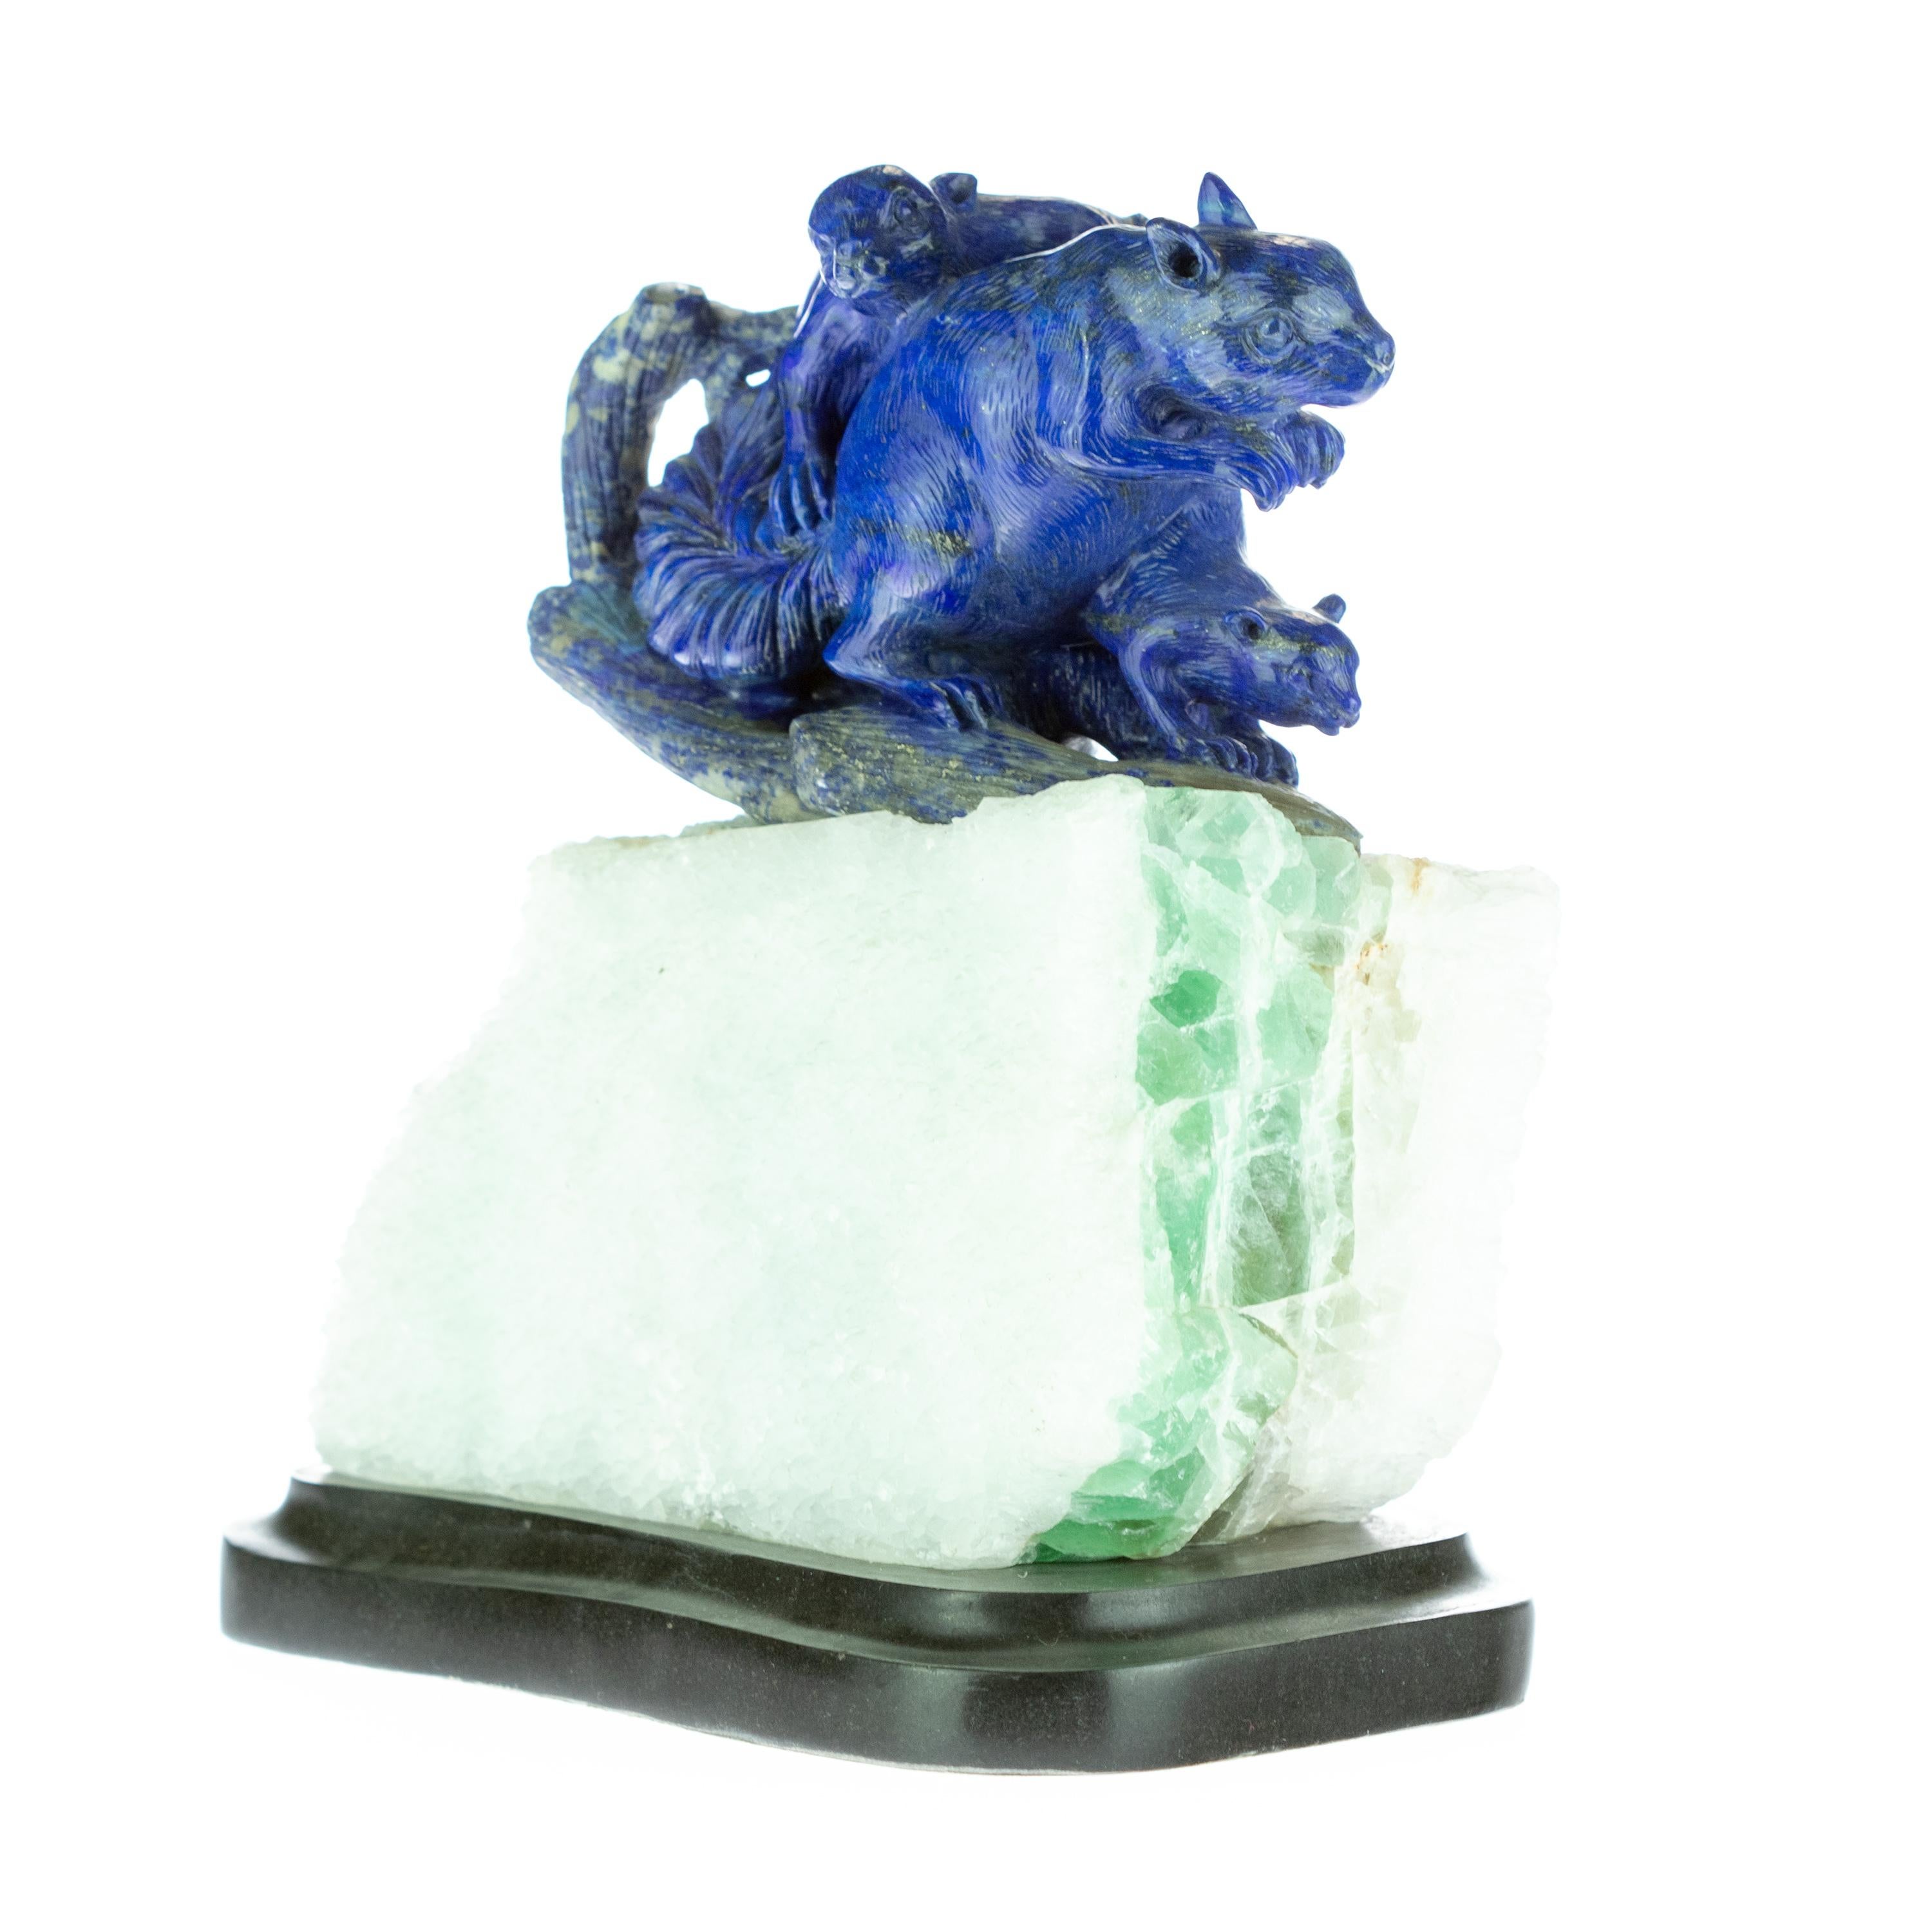 Hong Kong Lapis Lazuli Blue Squirrel Carved Animal Gemstone Artisanal Statue Sculpture